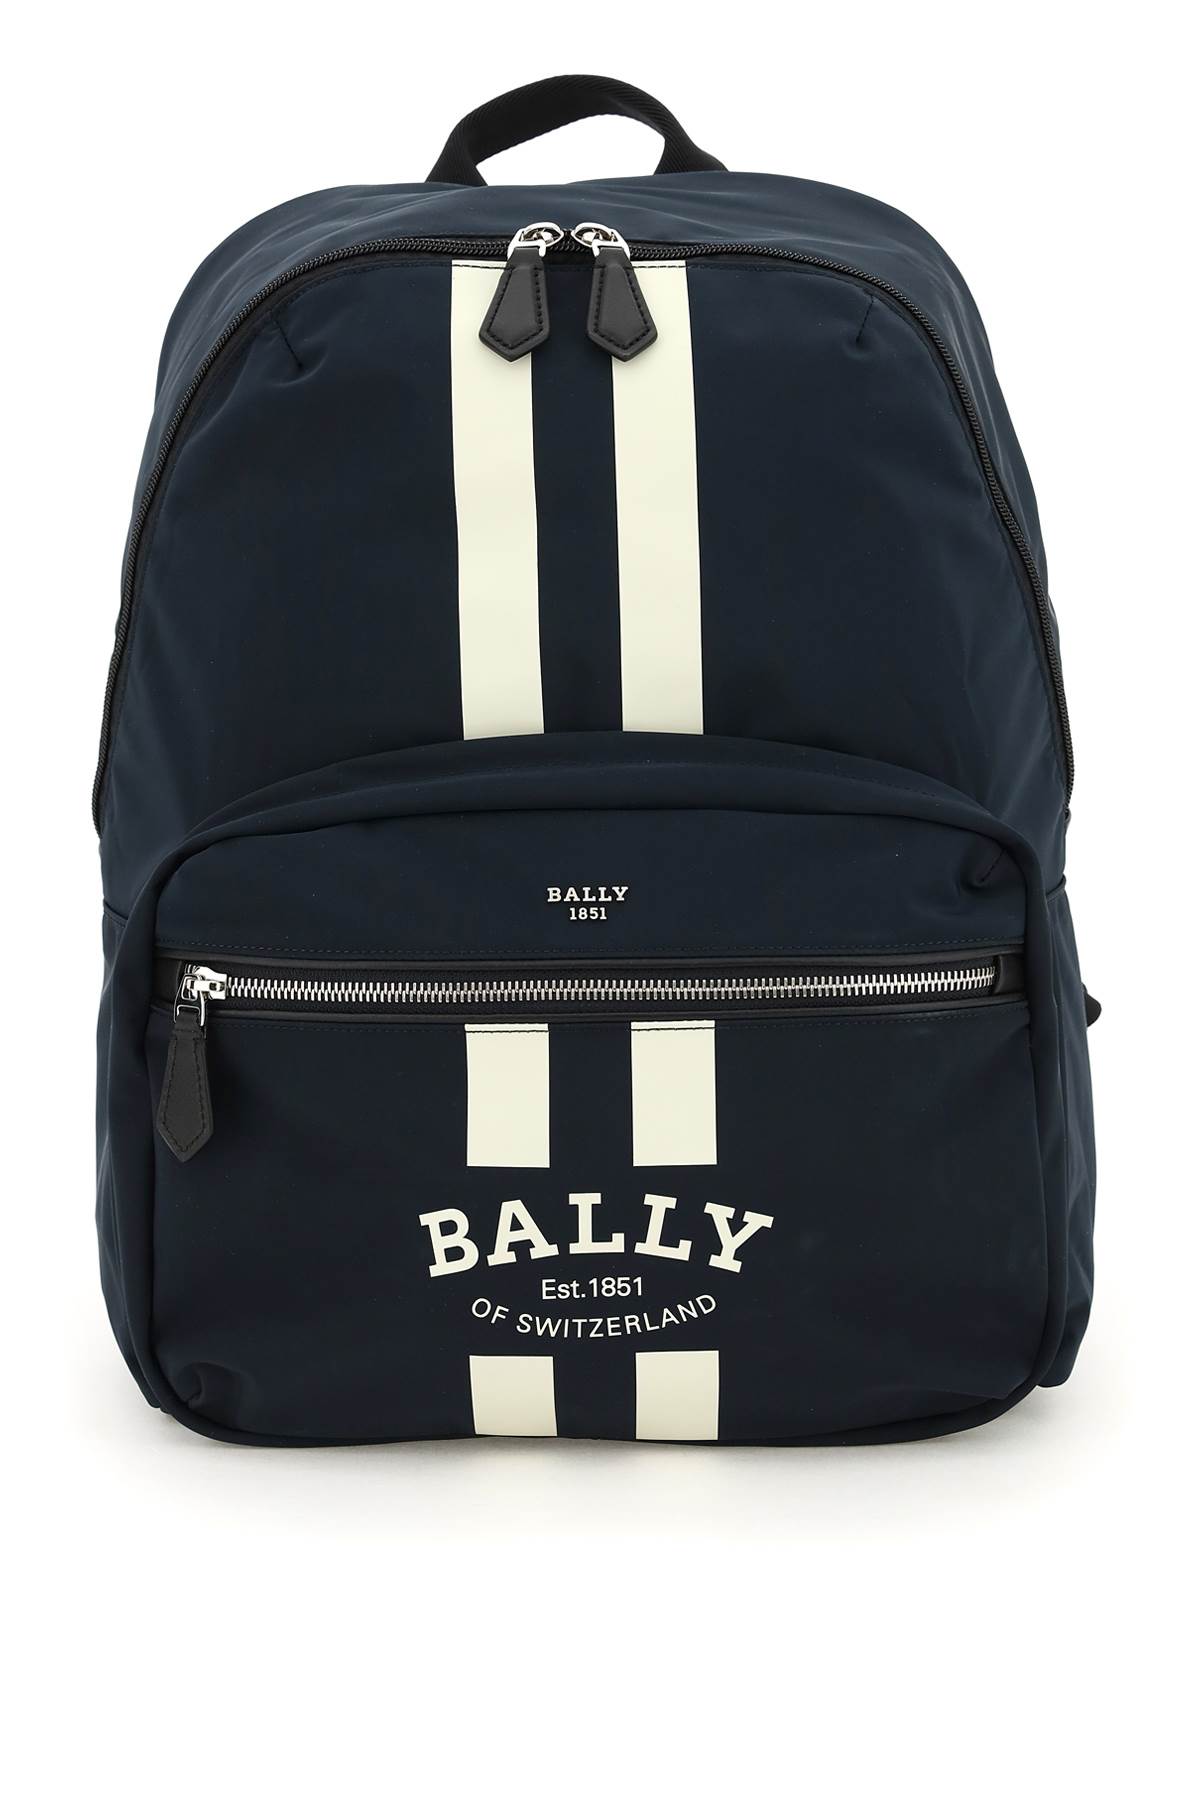 BALLY Backpacks | ModeSens